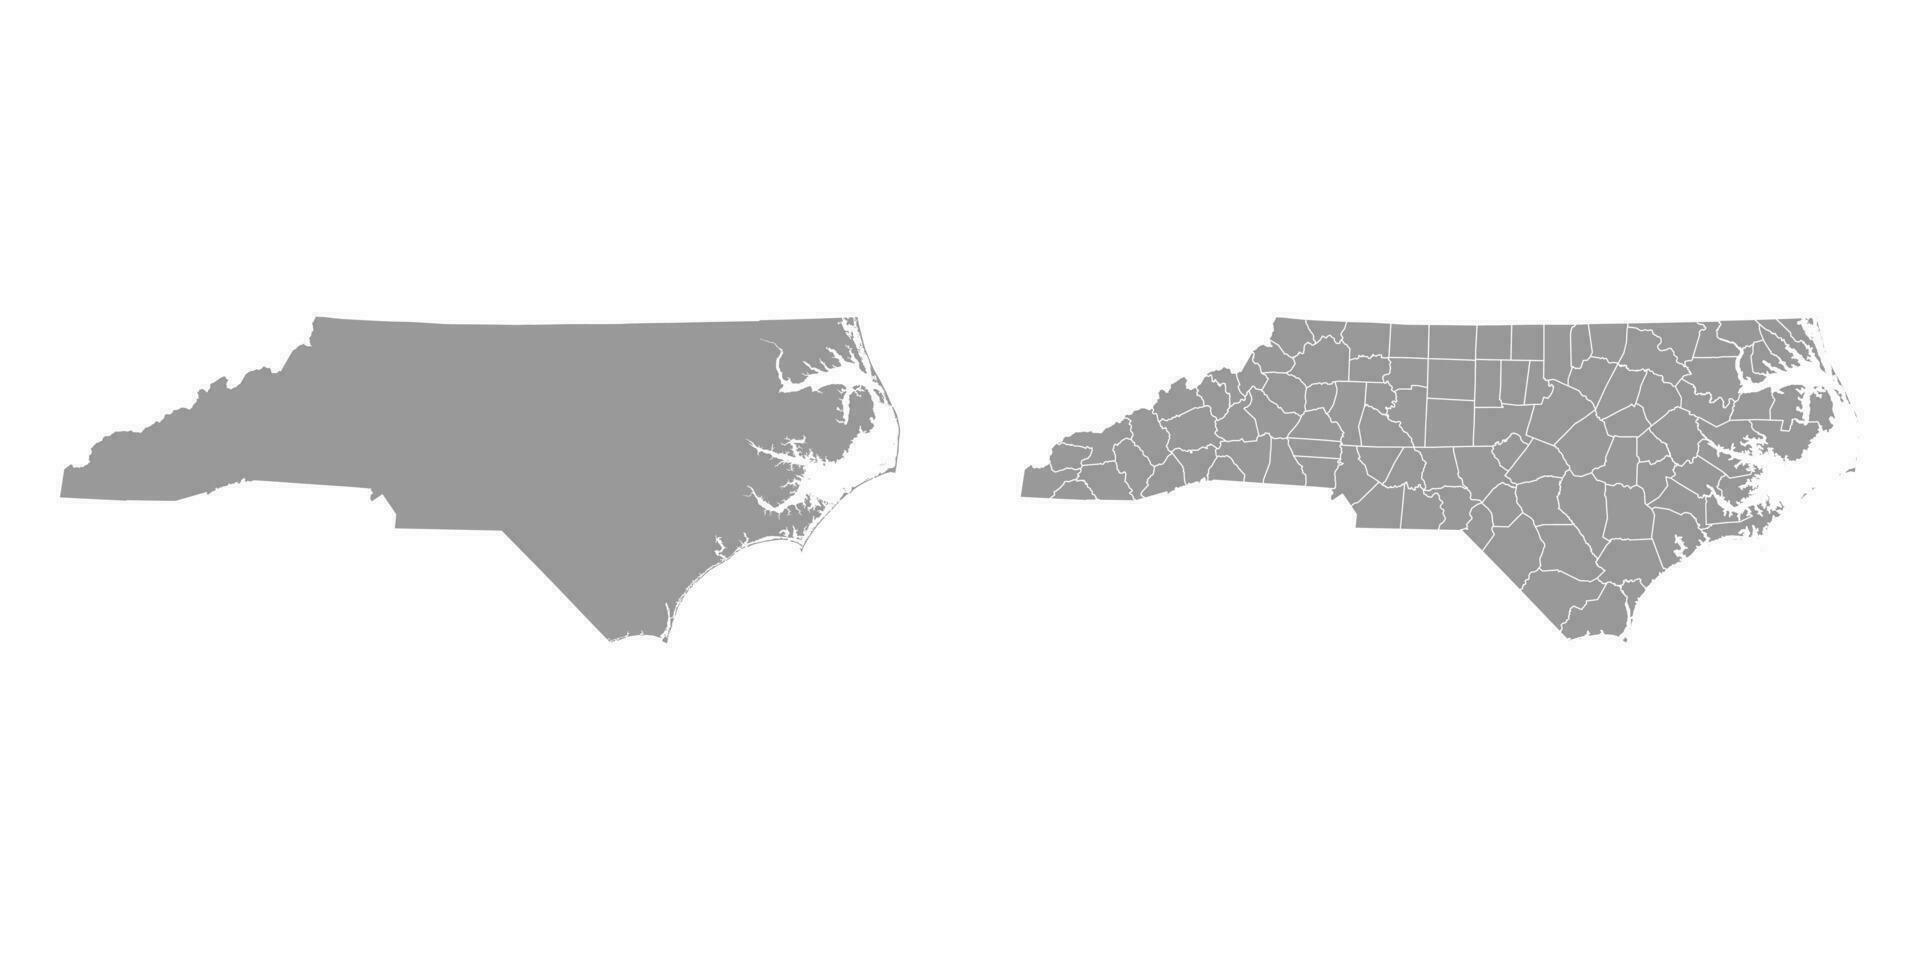 Norden Carolina Zustand grau Karten. Vektor Illustration.